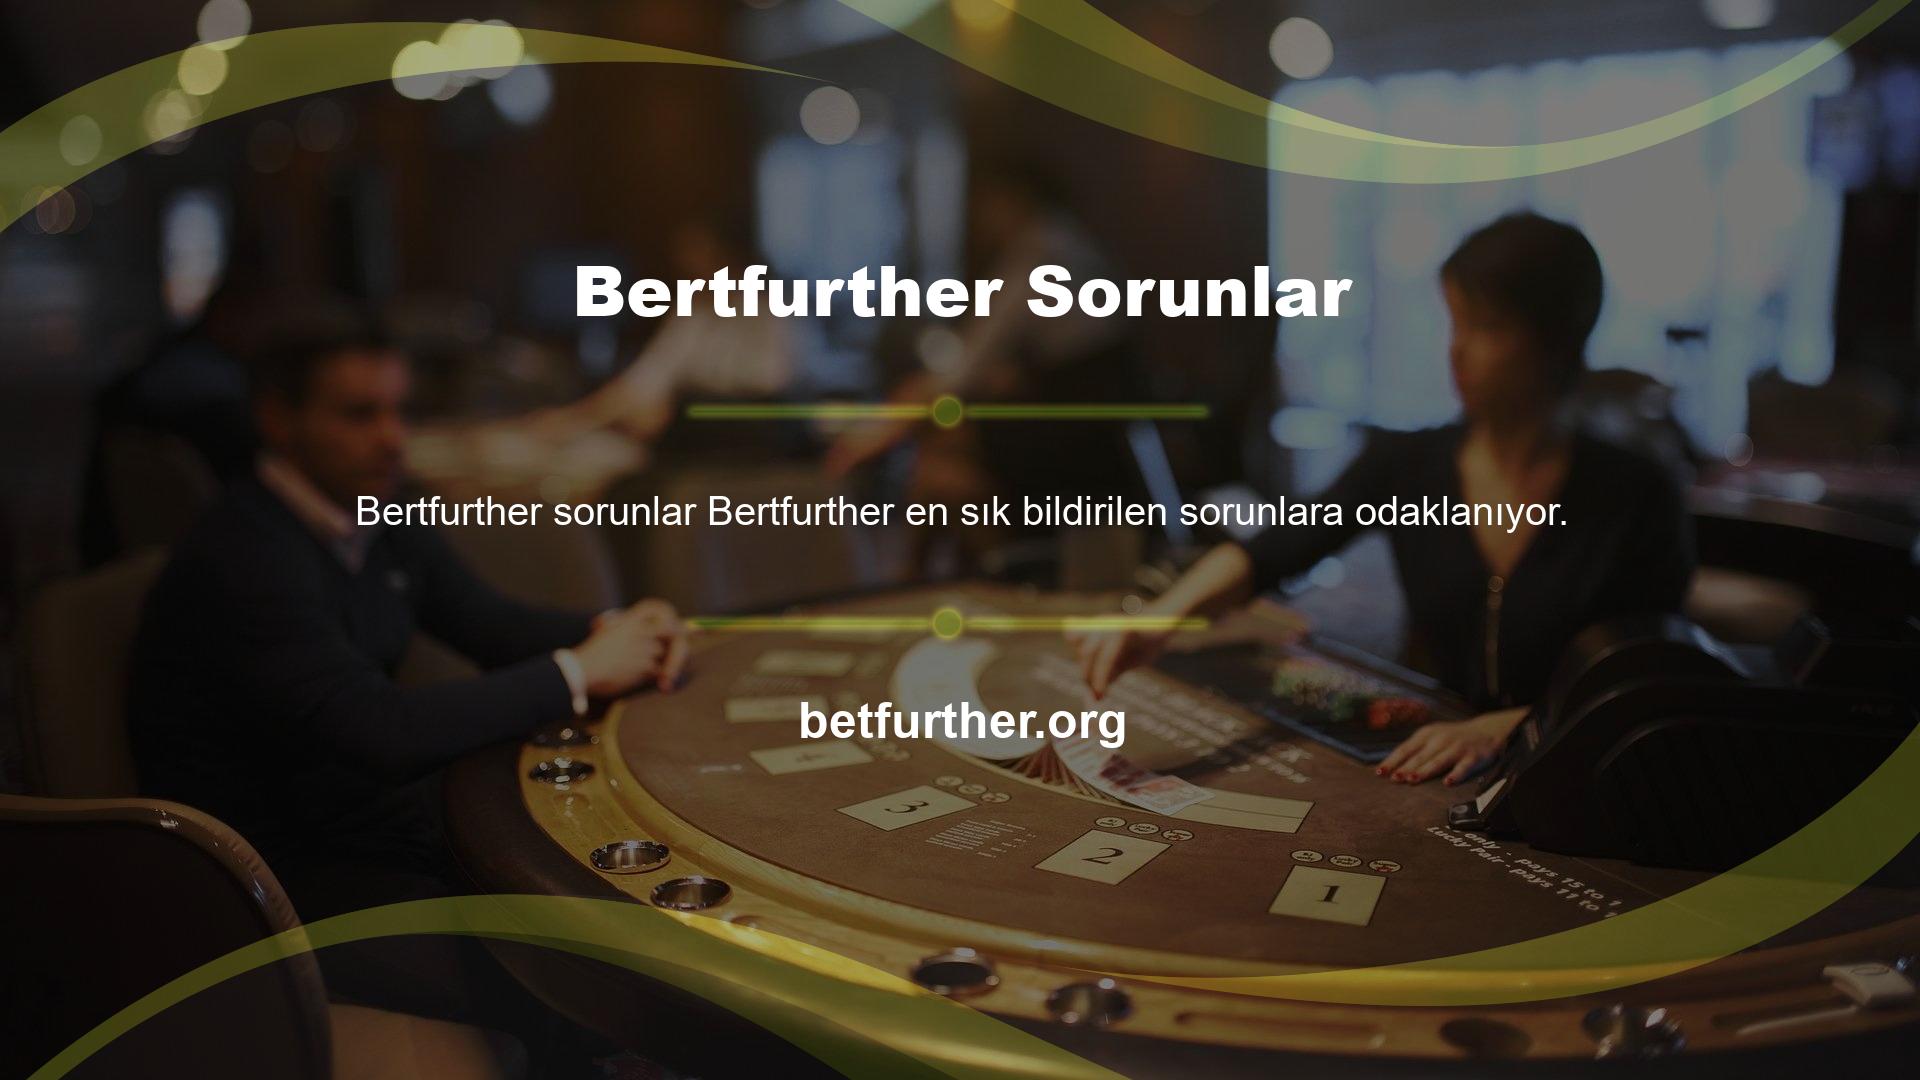 Çevrimiçi casino endüstrisi gibi son derece rekabetçi ve zorlu bir sektörde, Bertfurther kesintisiz hizmeti, bu uzun ve zorlu yolculukta büyük müşterilerimize yardımcı olduğumuz anlamına gelir ve bu da memnuniyet anlamına gelir